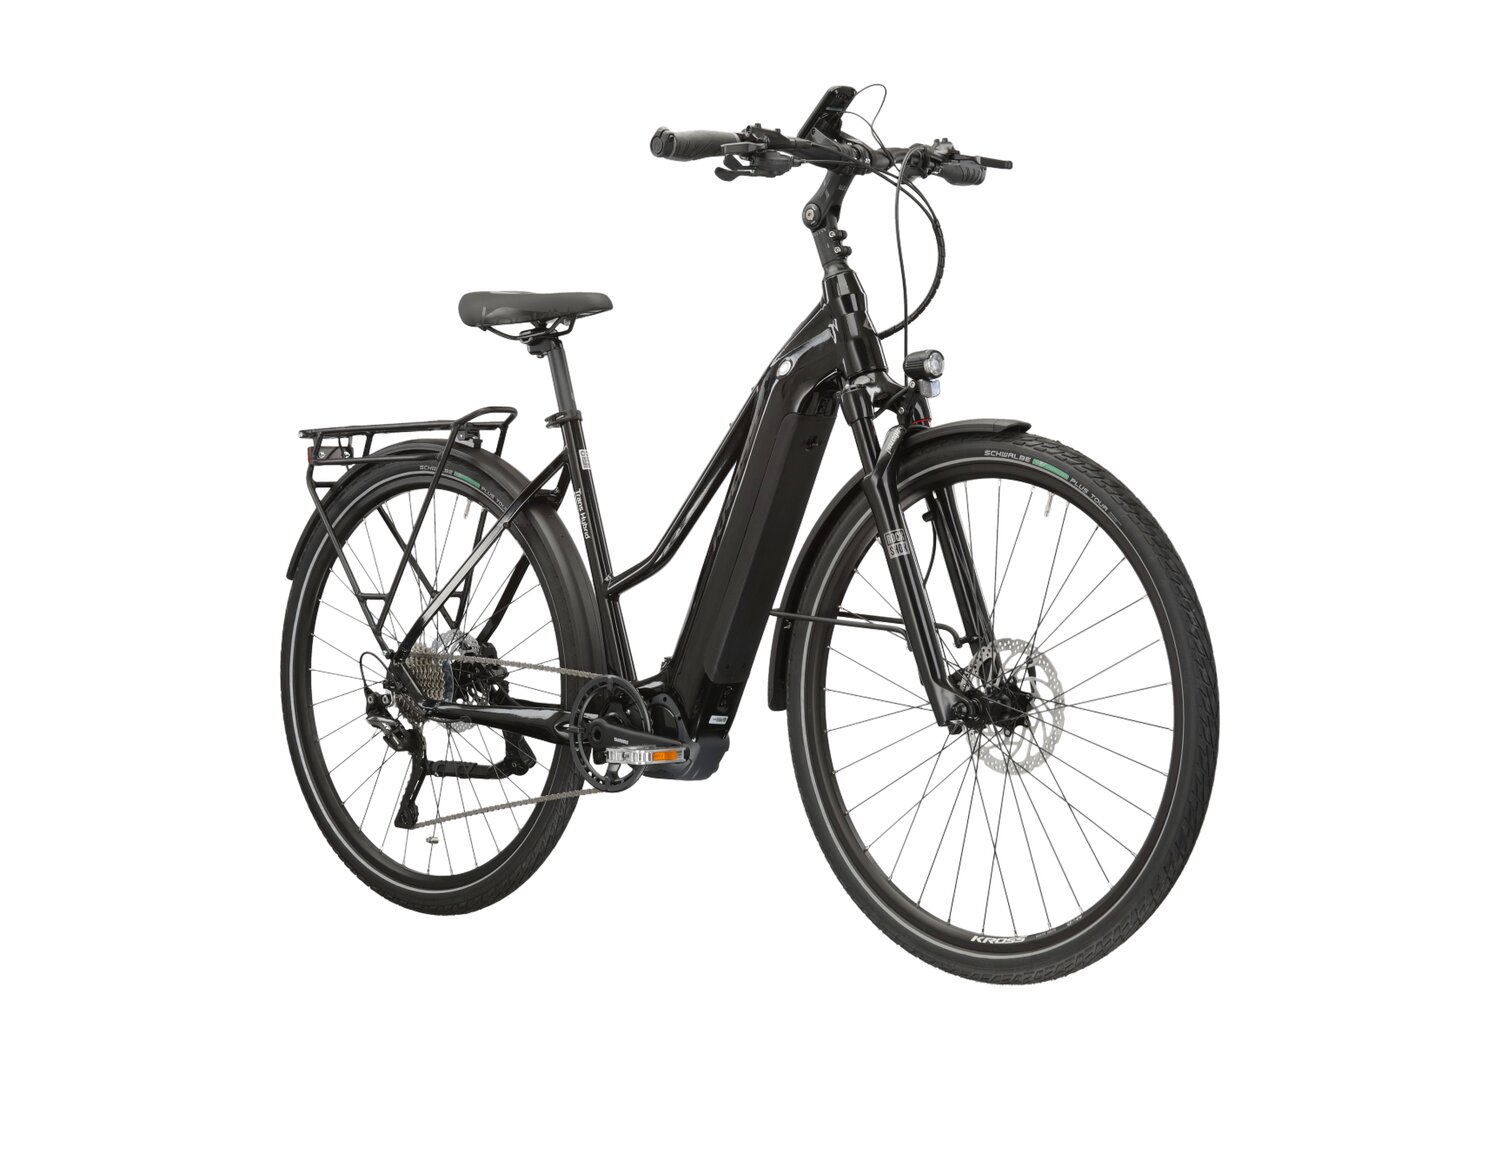  Elektryczny rower trekkingowy KROSS Trans Hybrid 6.0 630 Wh UNI na aluminiowej ramie w kolorze czarnym wyposażony w osprzęt Shimano i napęd elektryczny Shimano